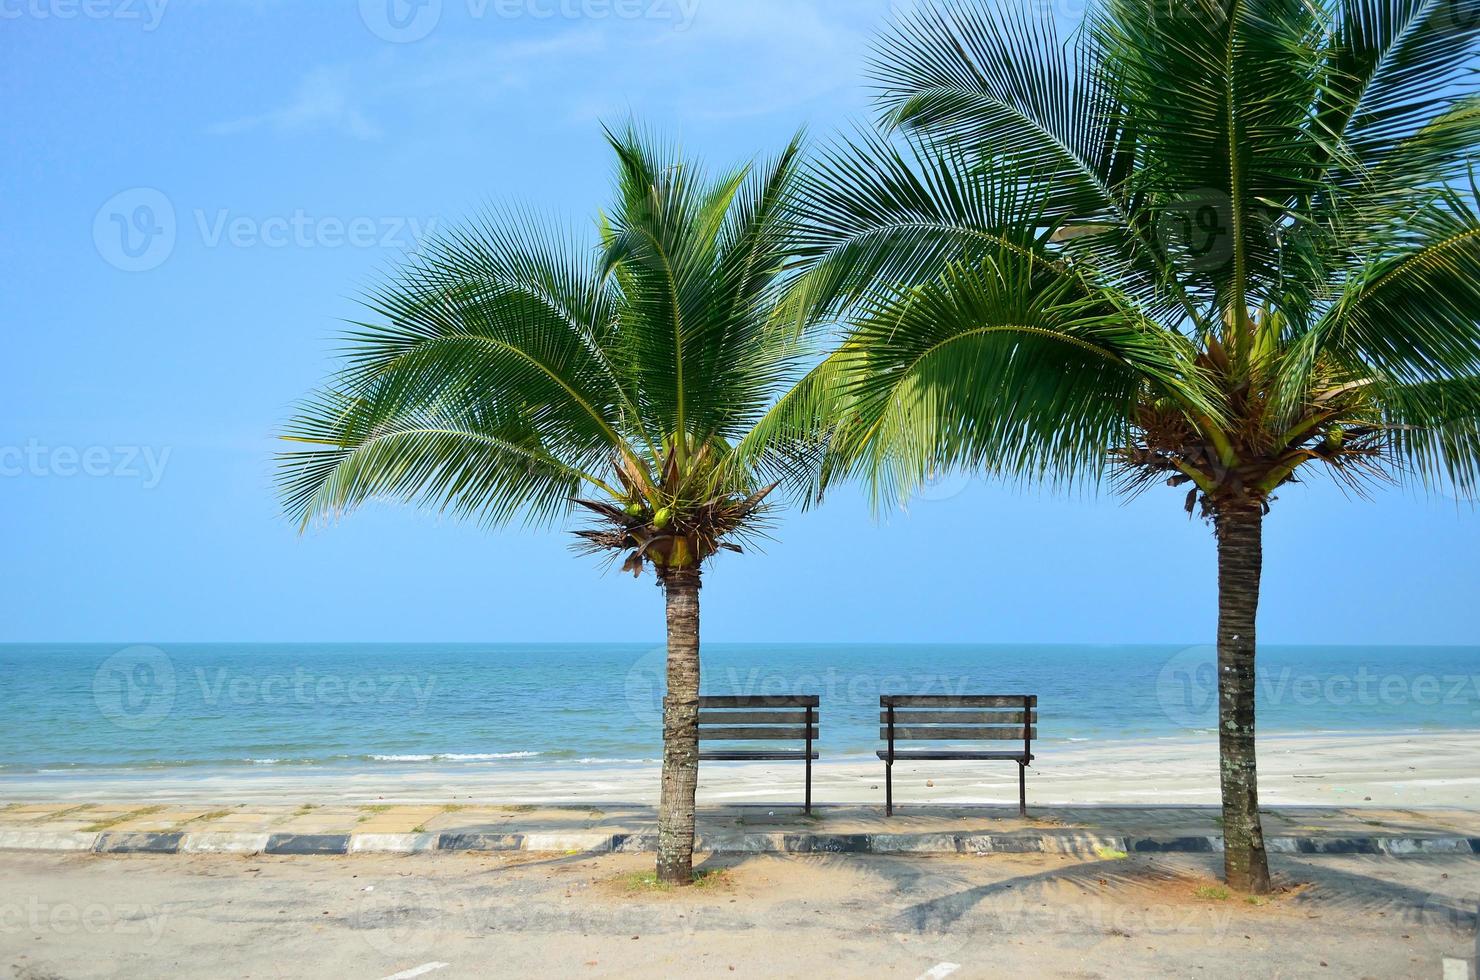 banc près de la plage avec cocotier vert photo